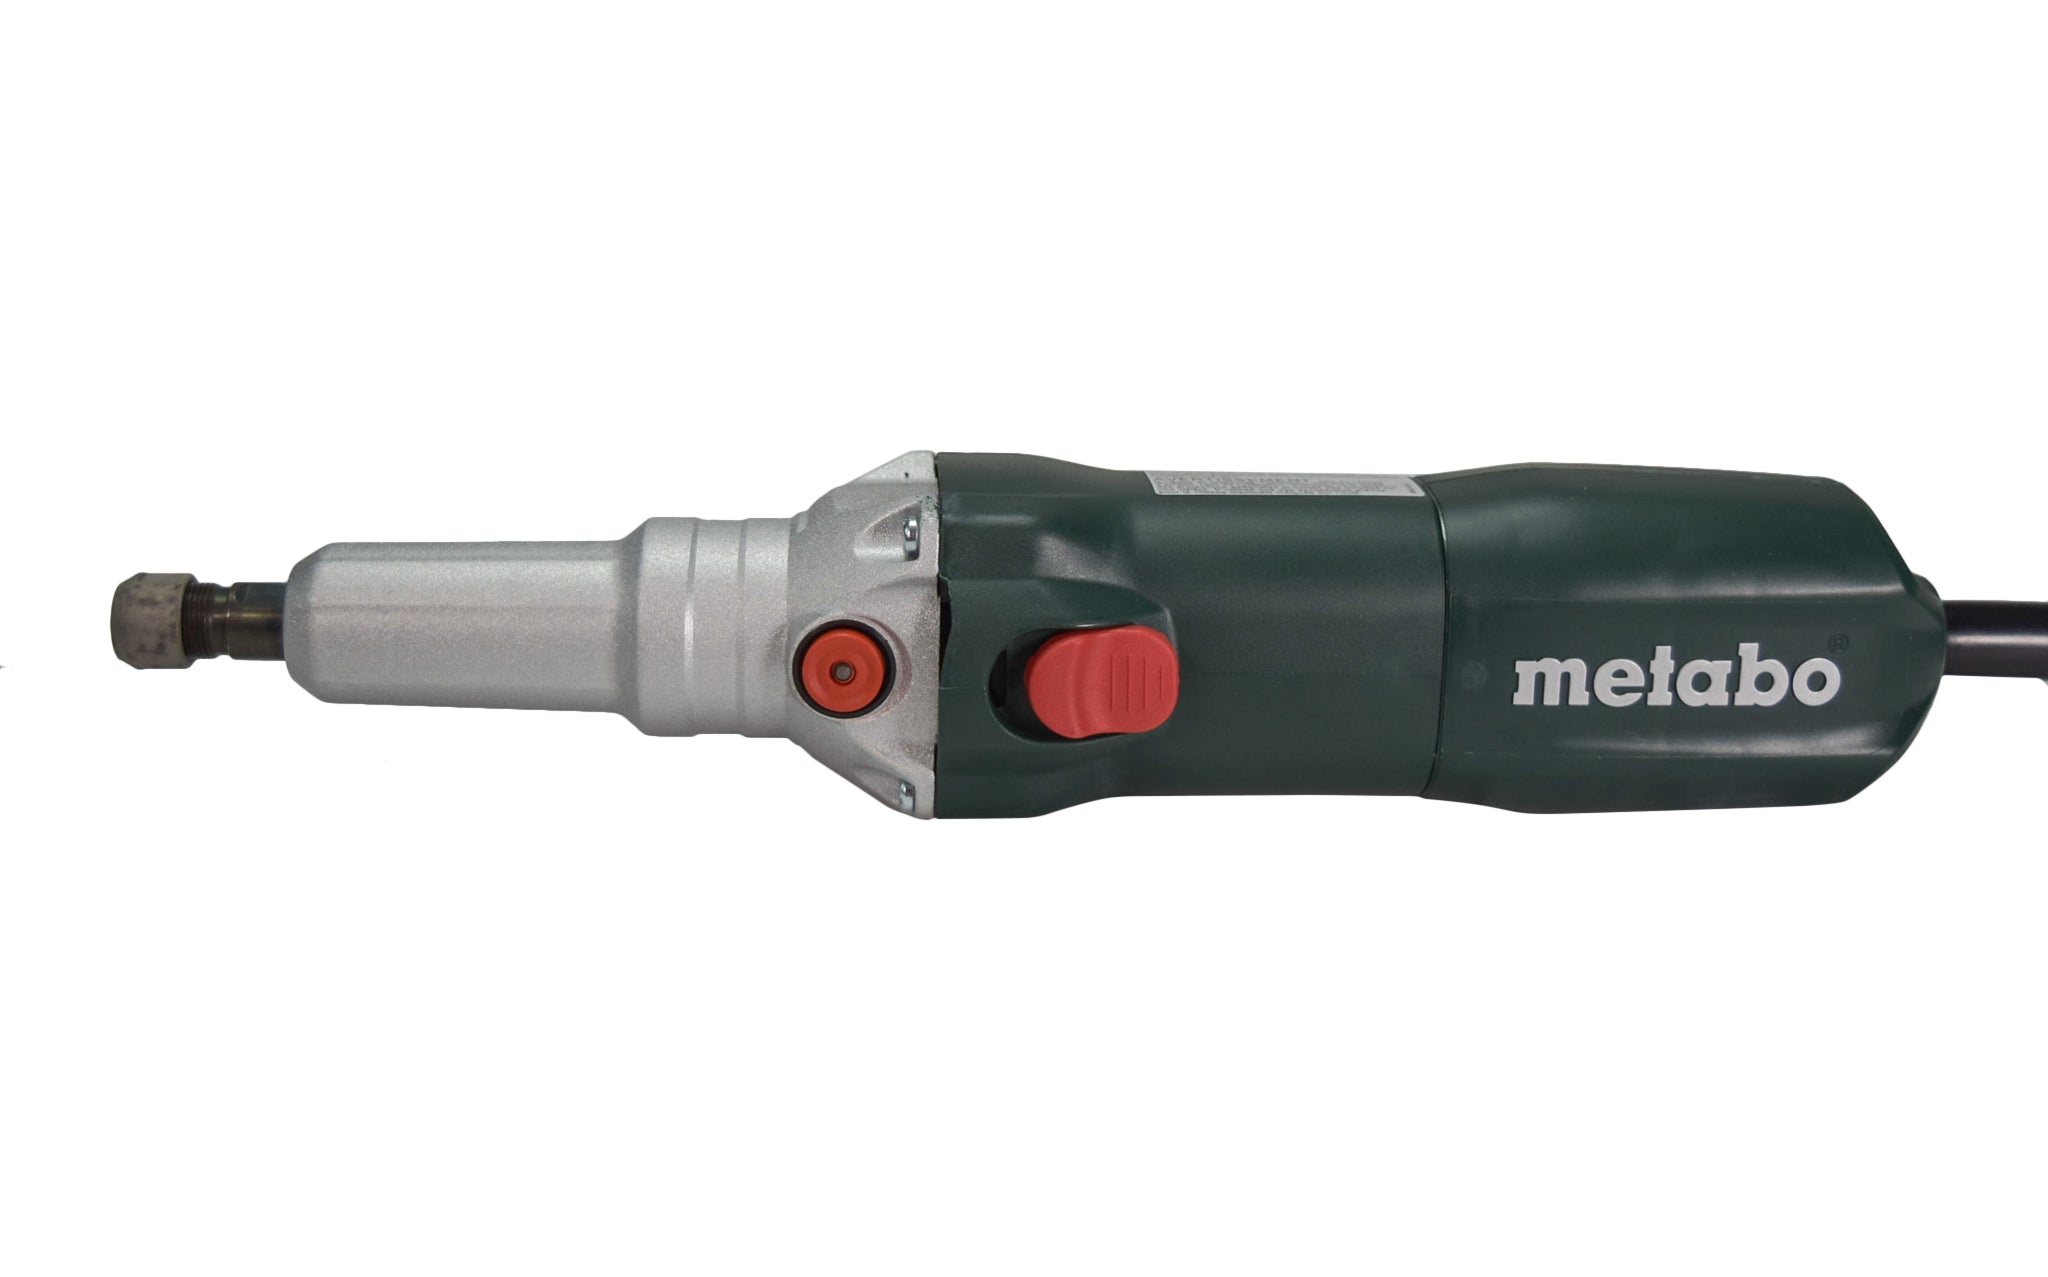 Metabo 600616420 10,000-30,500 Rpm - 6.4 Amp Variable Speed Die Grinder With Lock-On